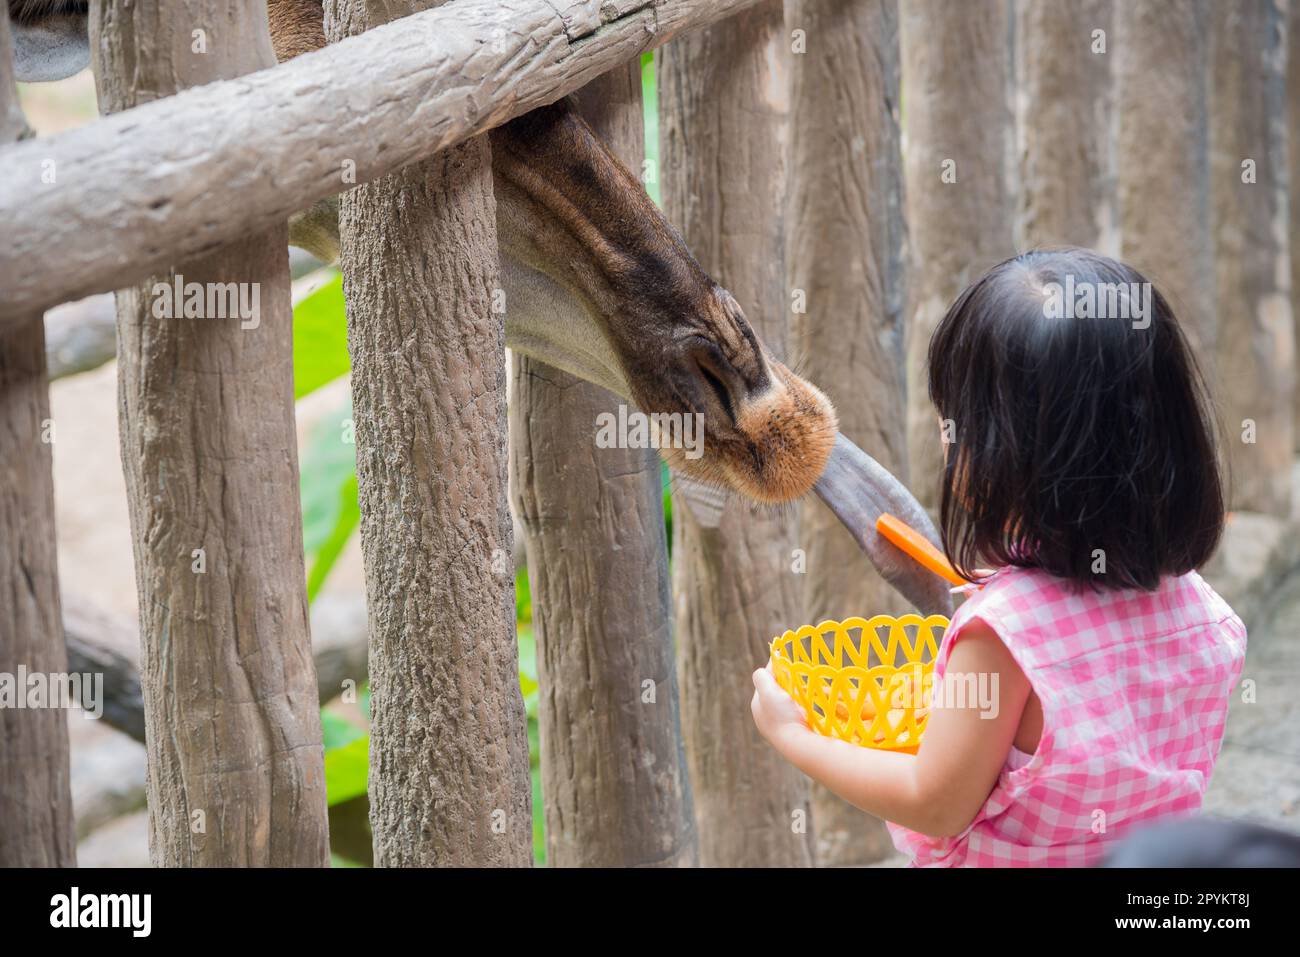 La Giraffe a reçu de la nourriture de petite fille avec la relation douce Banque D'Images